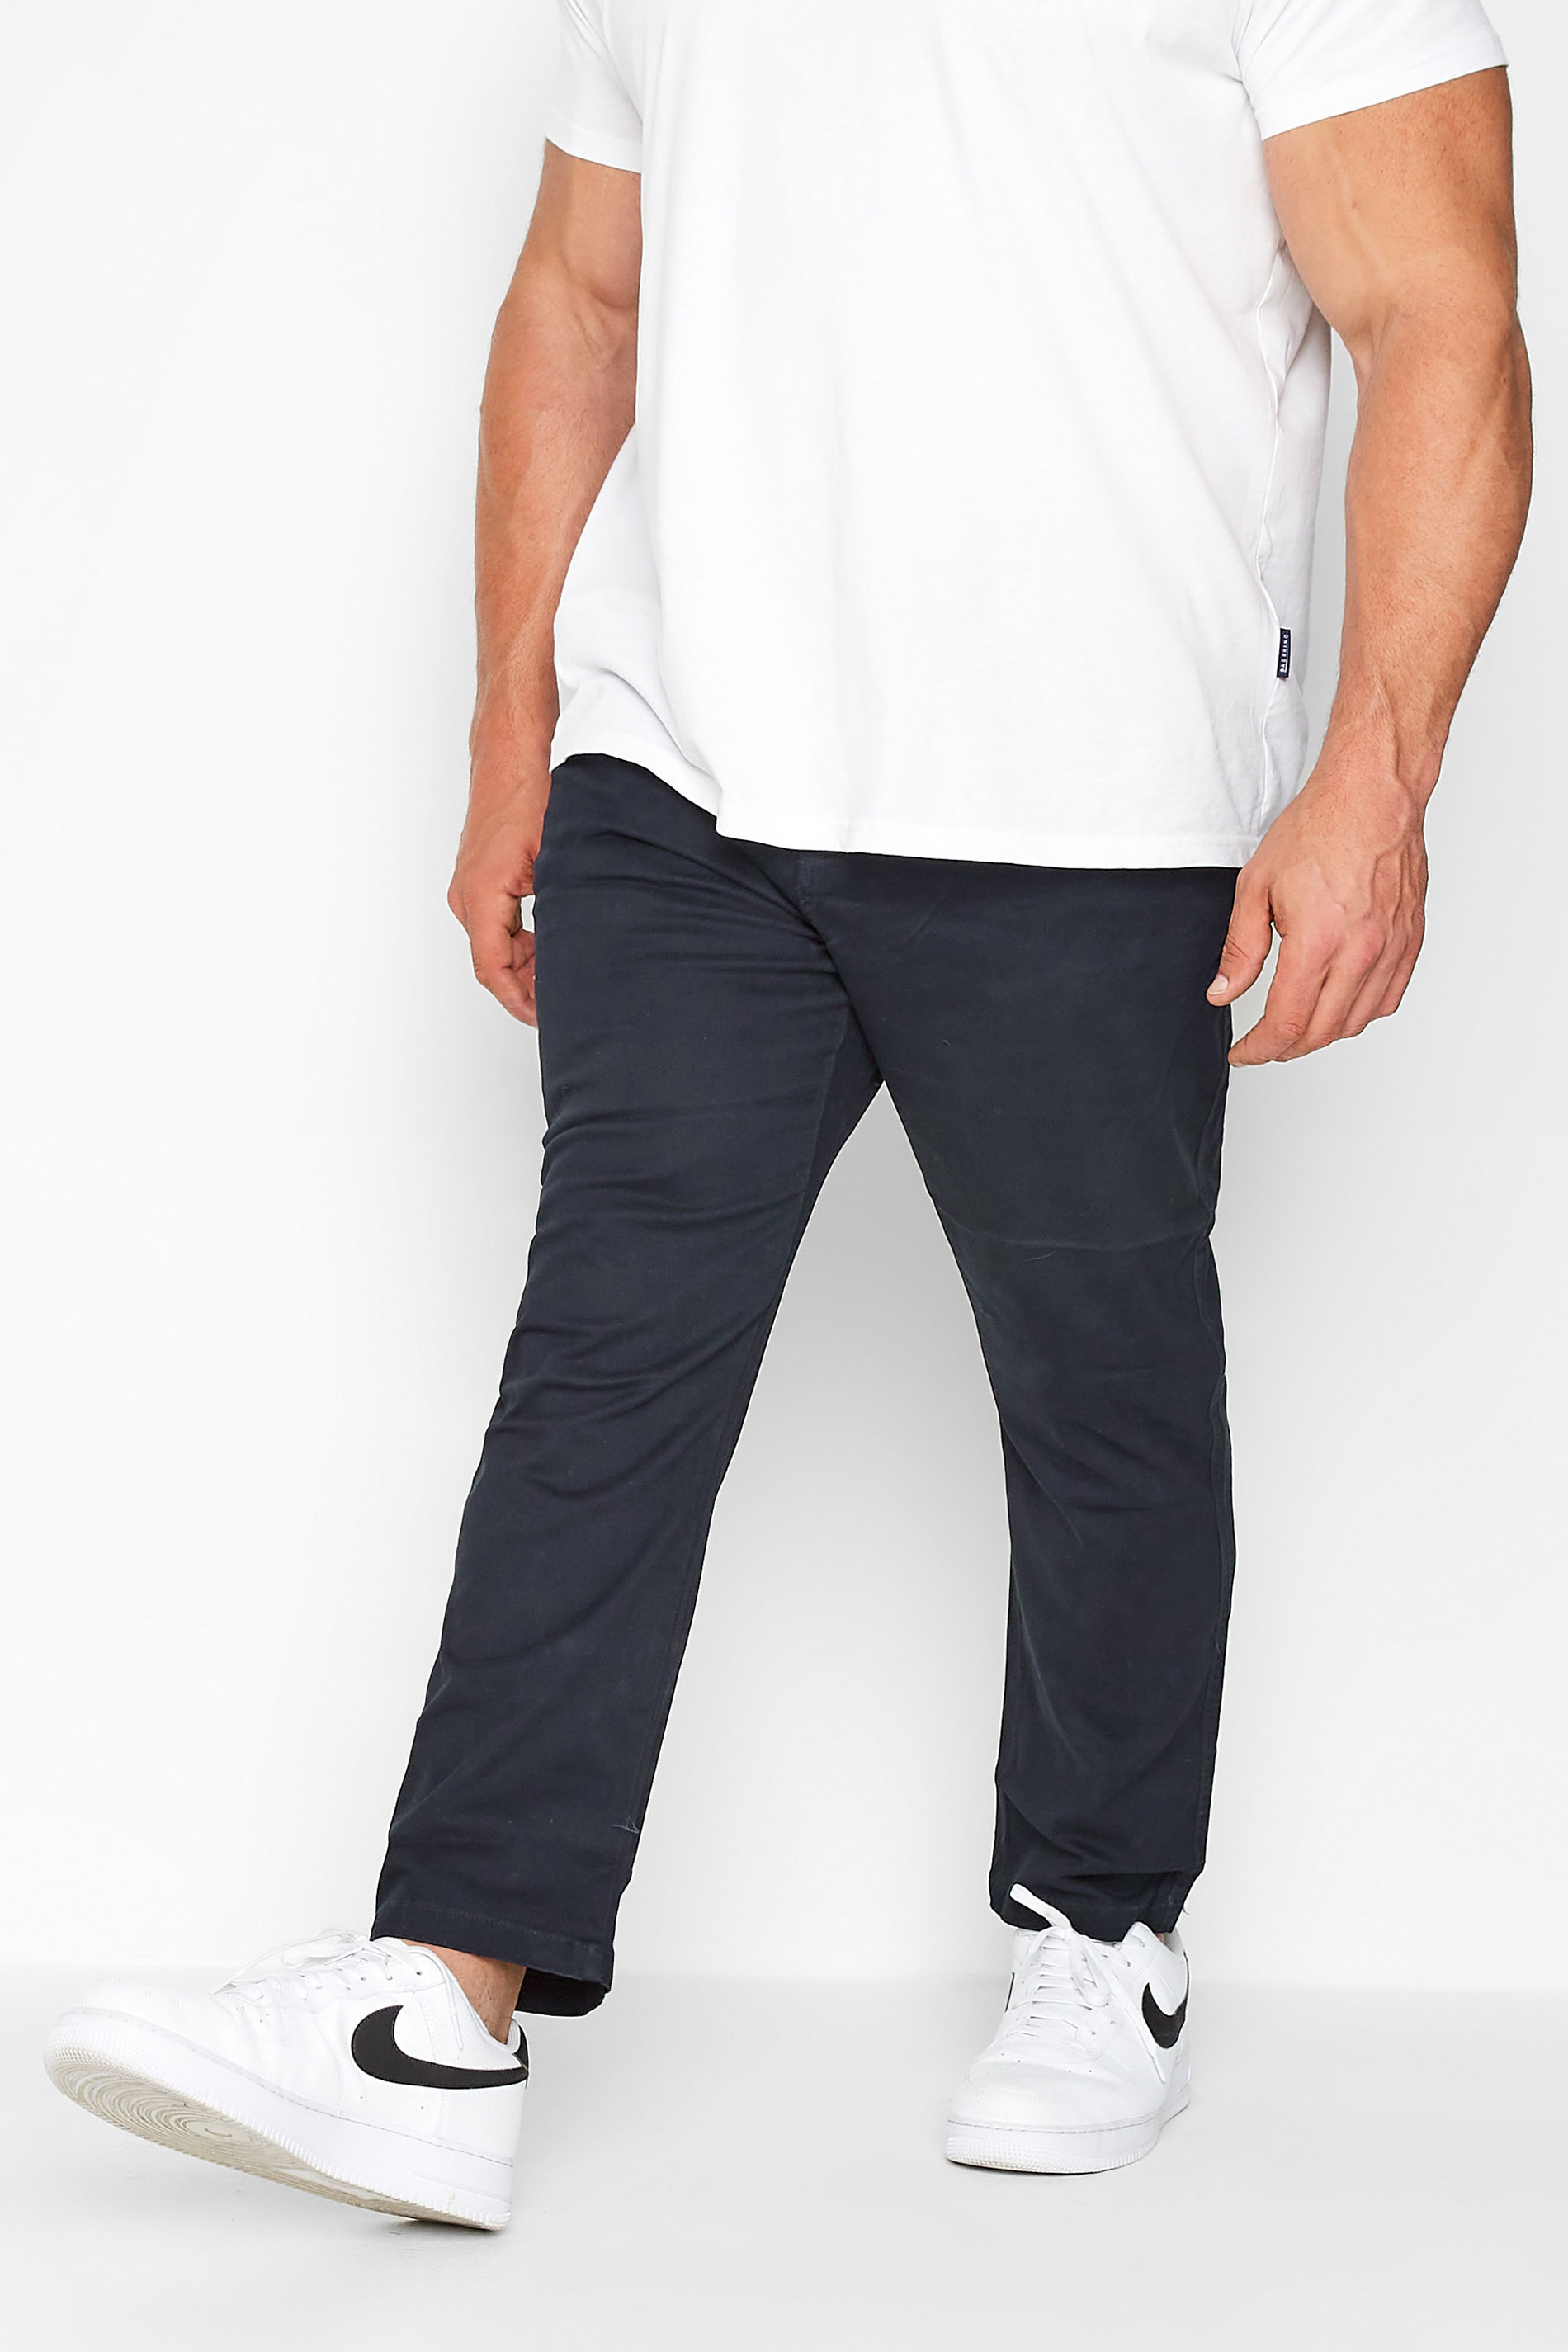 KAM Navy Blue Chino Trousers | BadRhino 1